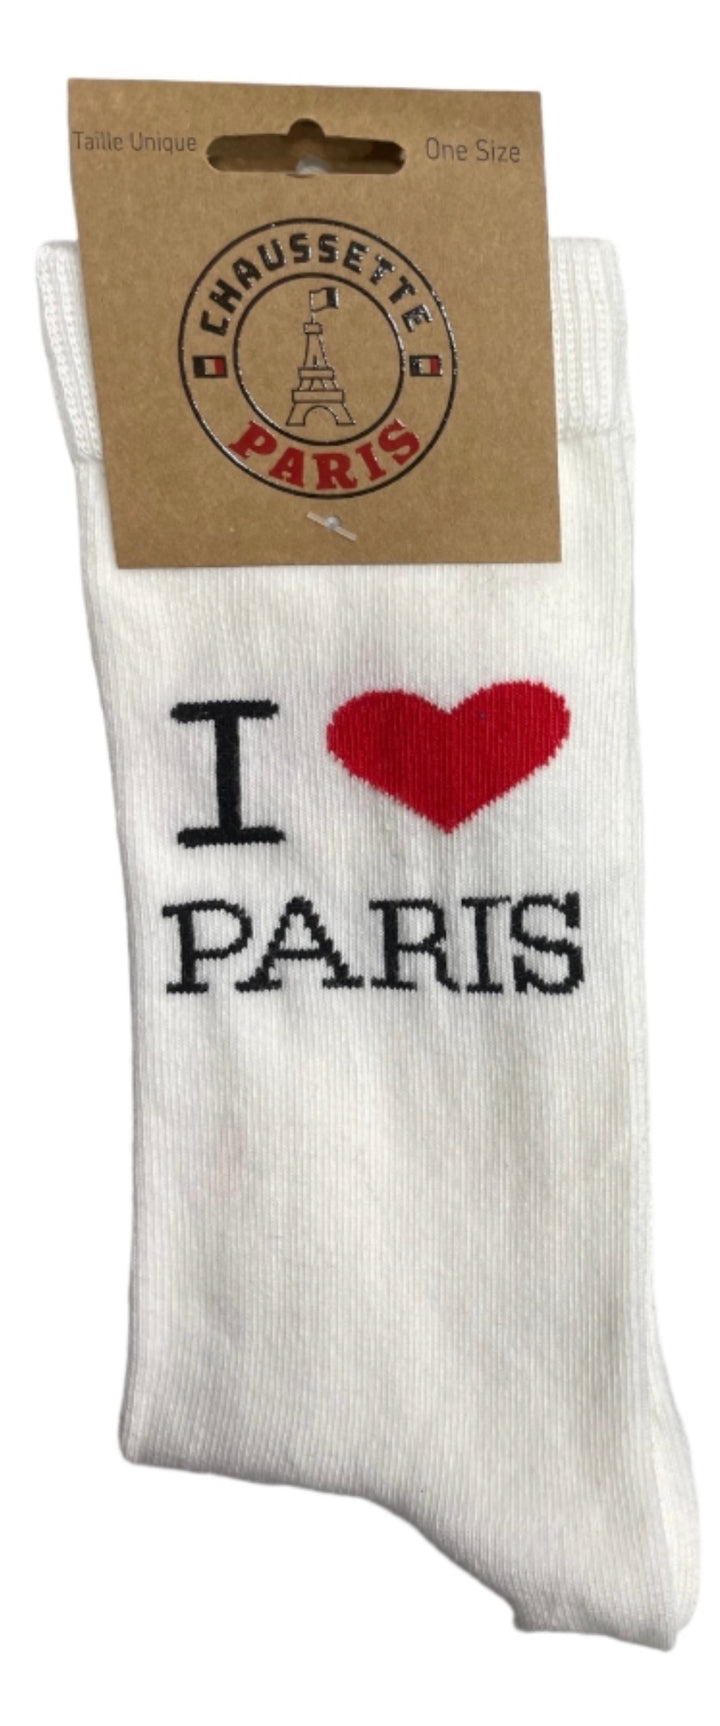 Par de meias I LOVE PARIS pretas ou brancas